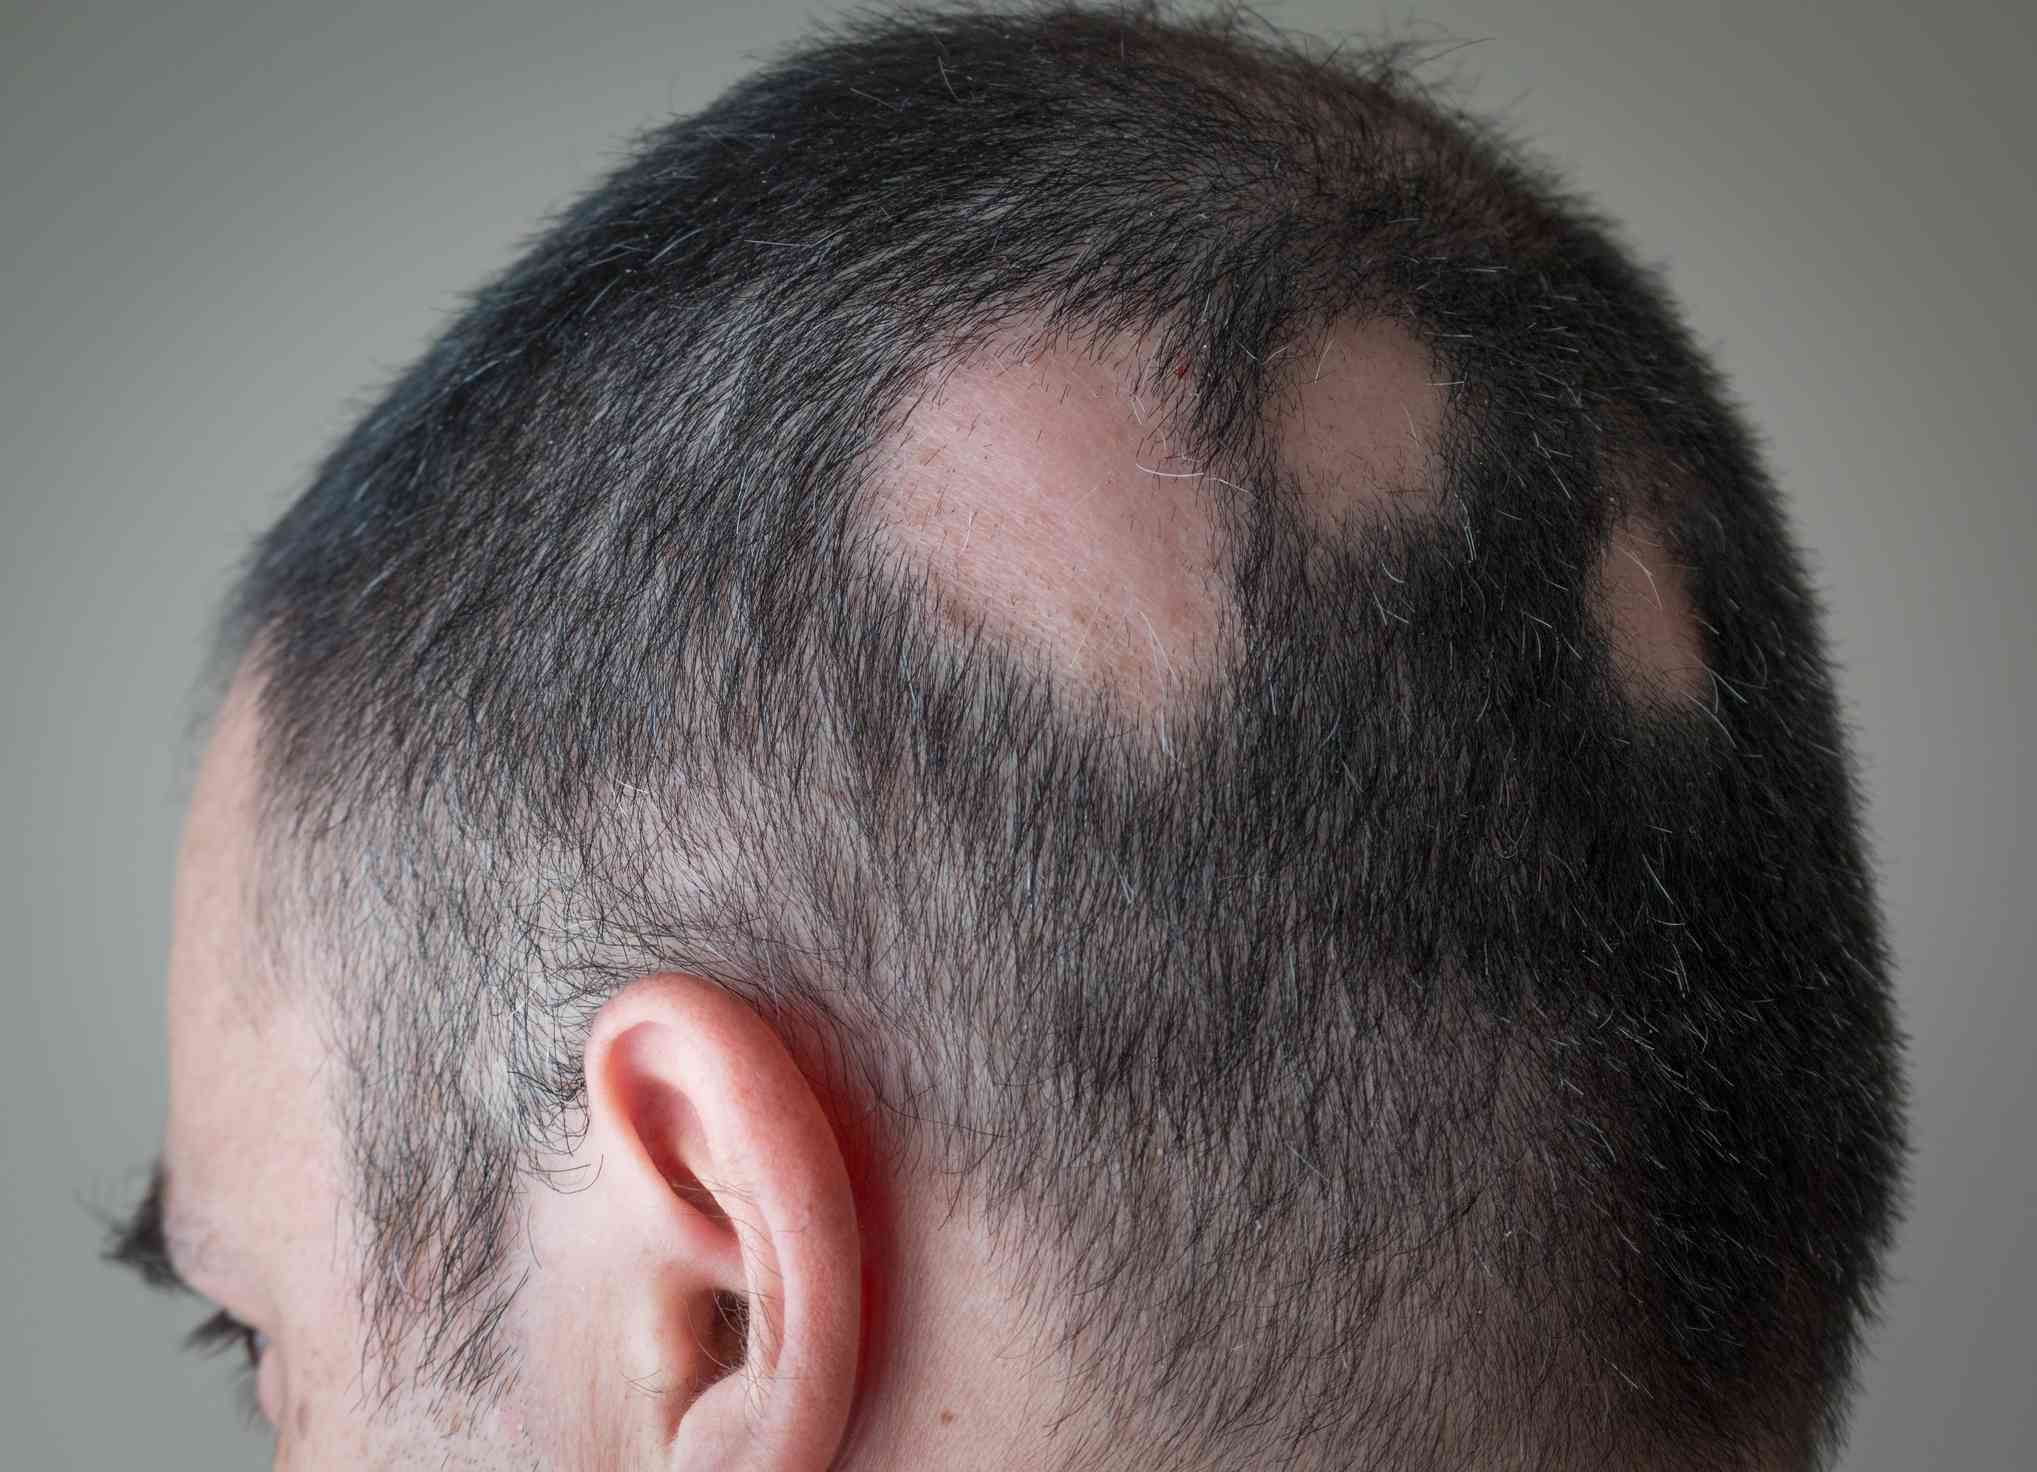 Как остановить выпадение волос у мужчин: 6 основных методов